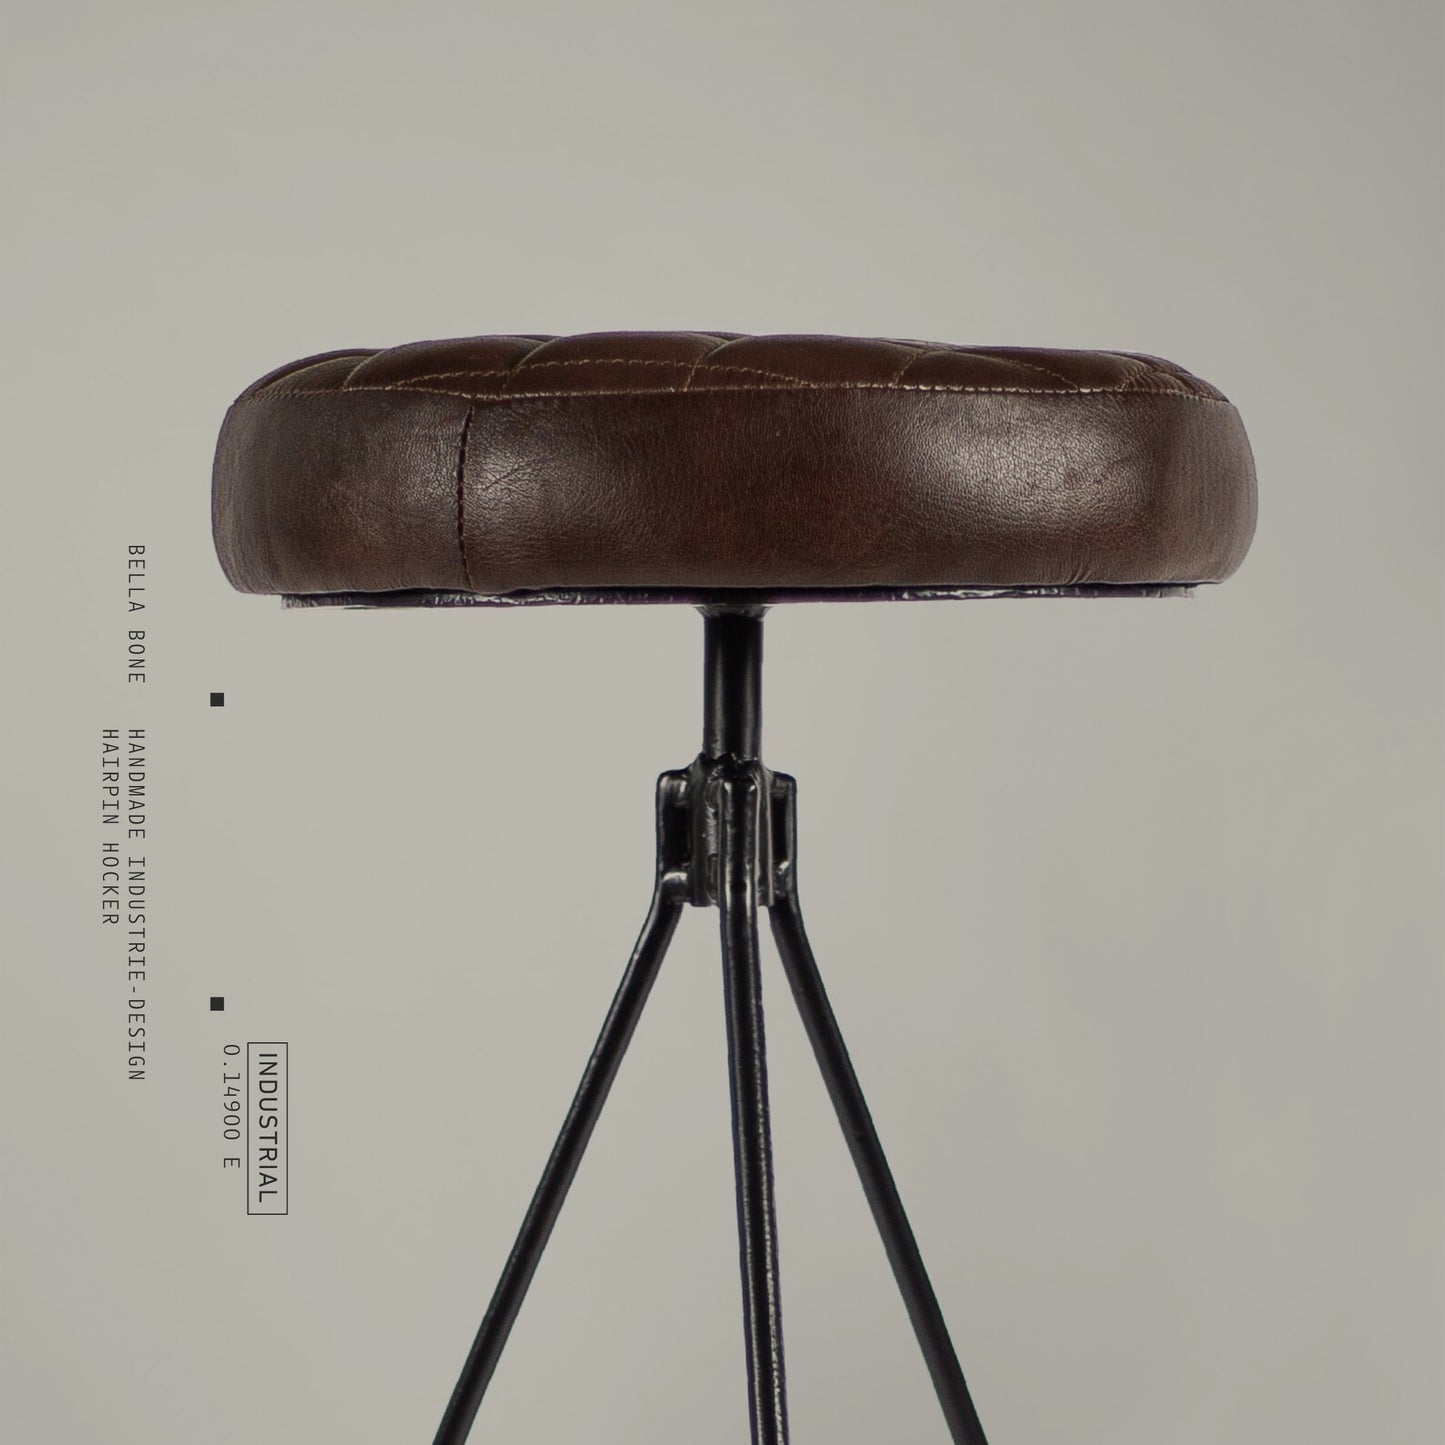 Bella Bone – Handmade Industrie-Design Hocker aus Metall mit Polstersitz